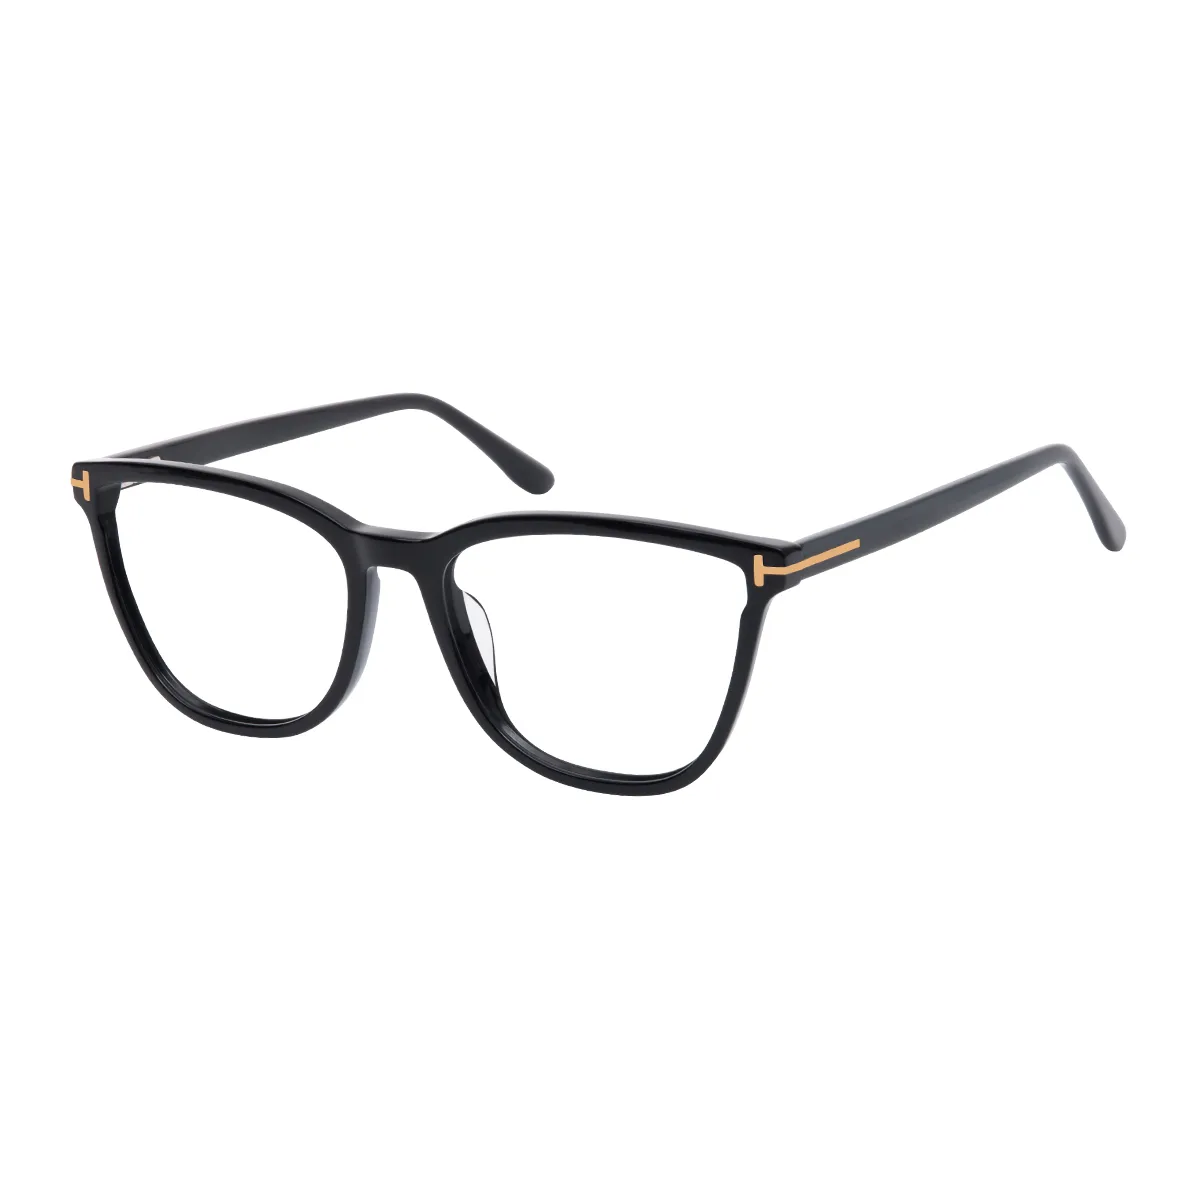 Darian - Square Black Glasses for Men & Women